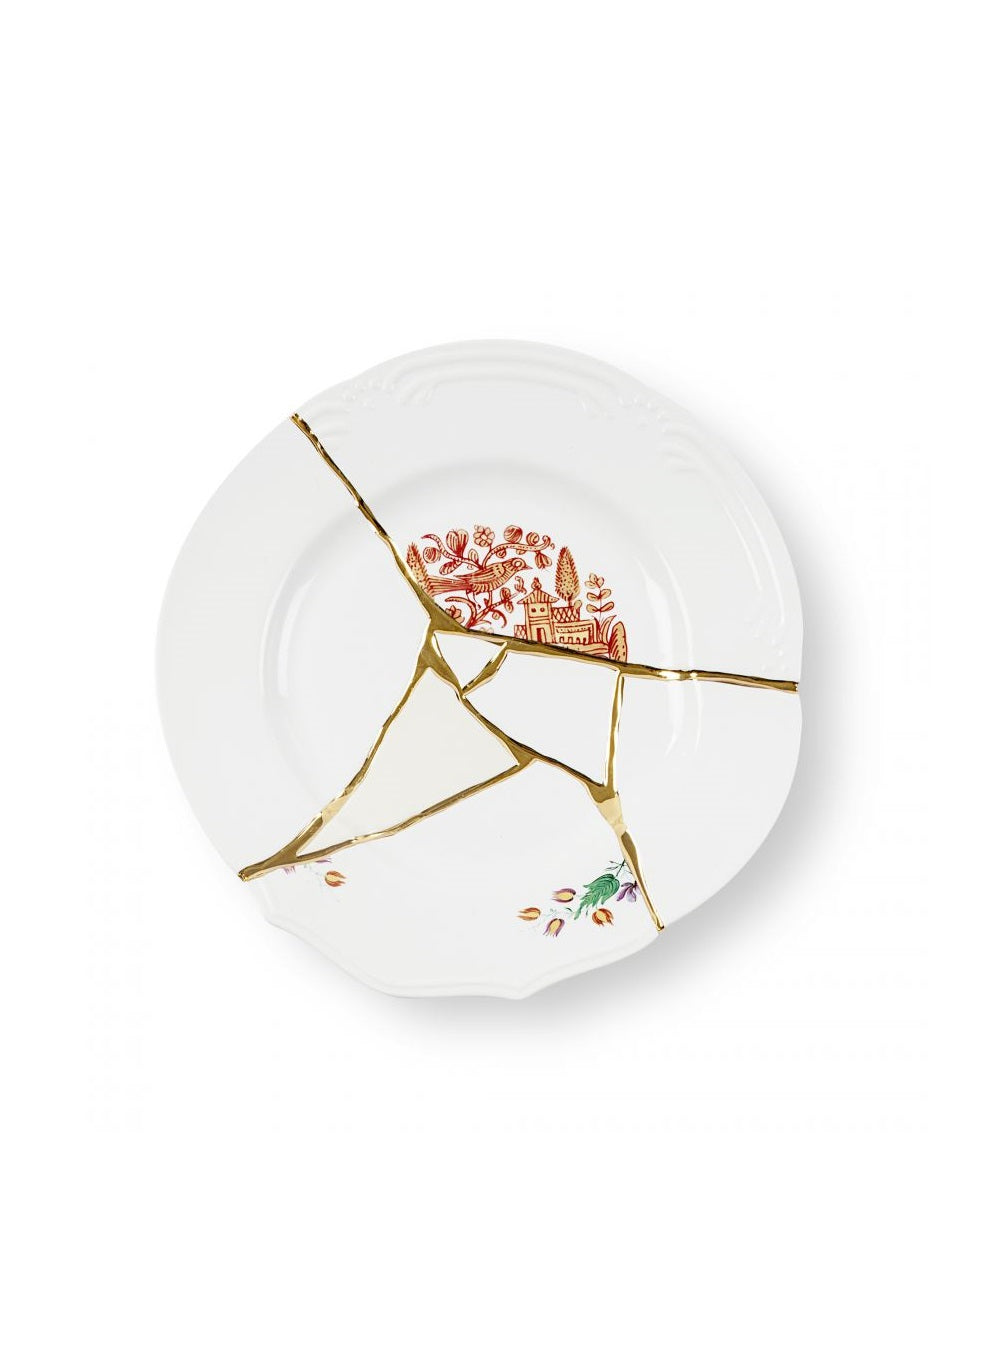 Seletti Kintsugi porcelain dinner plate